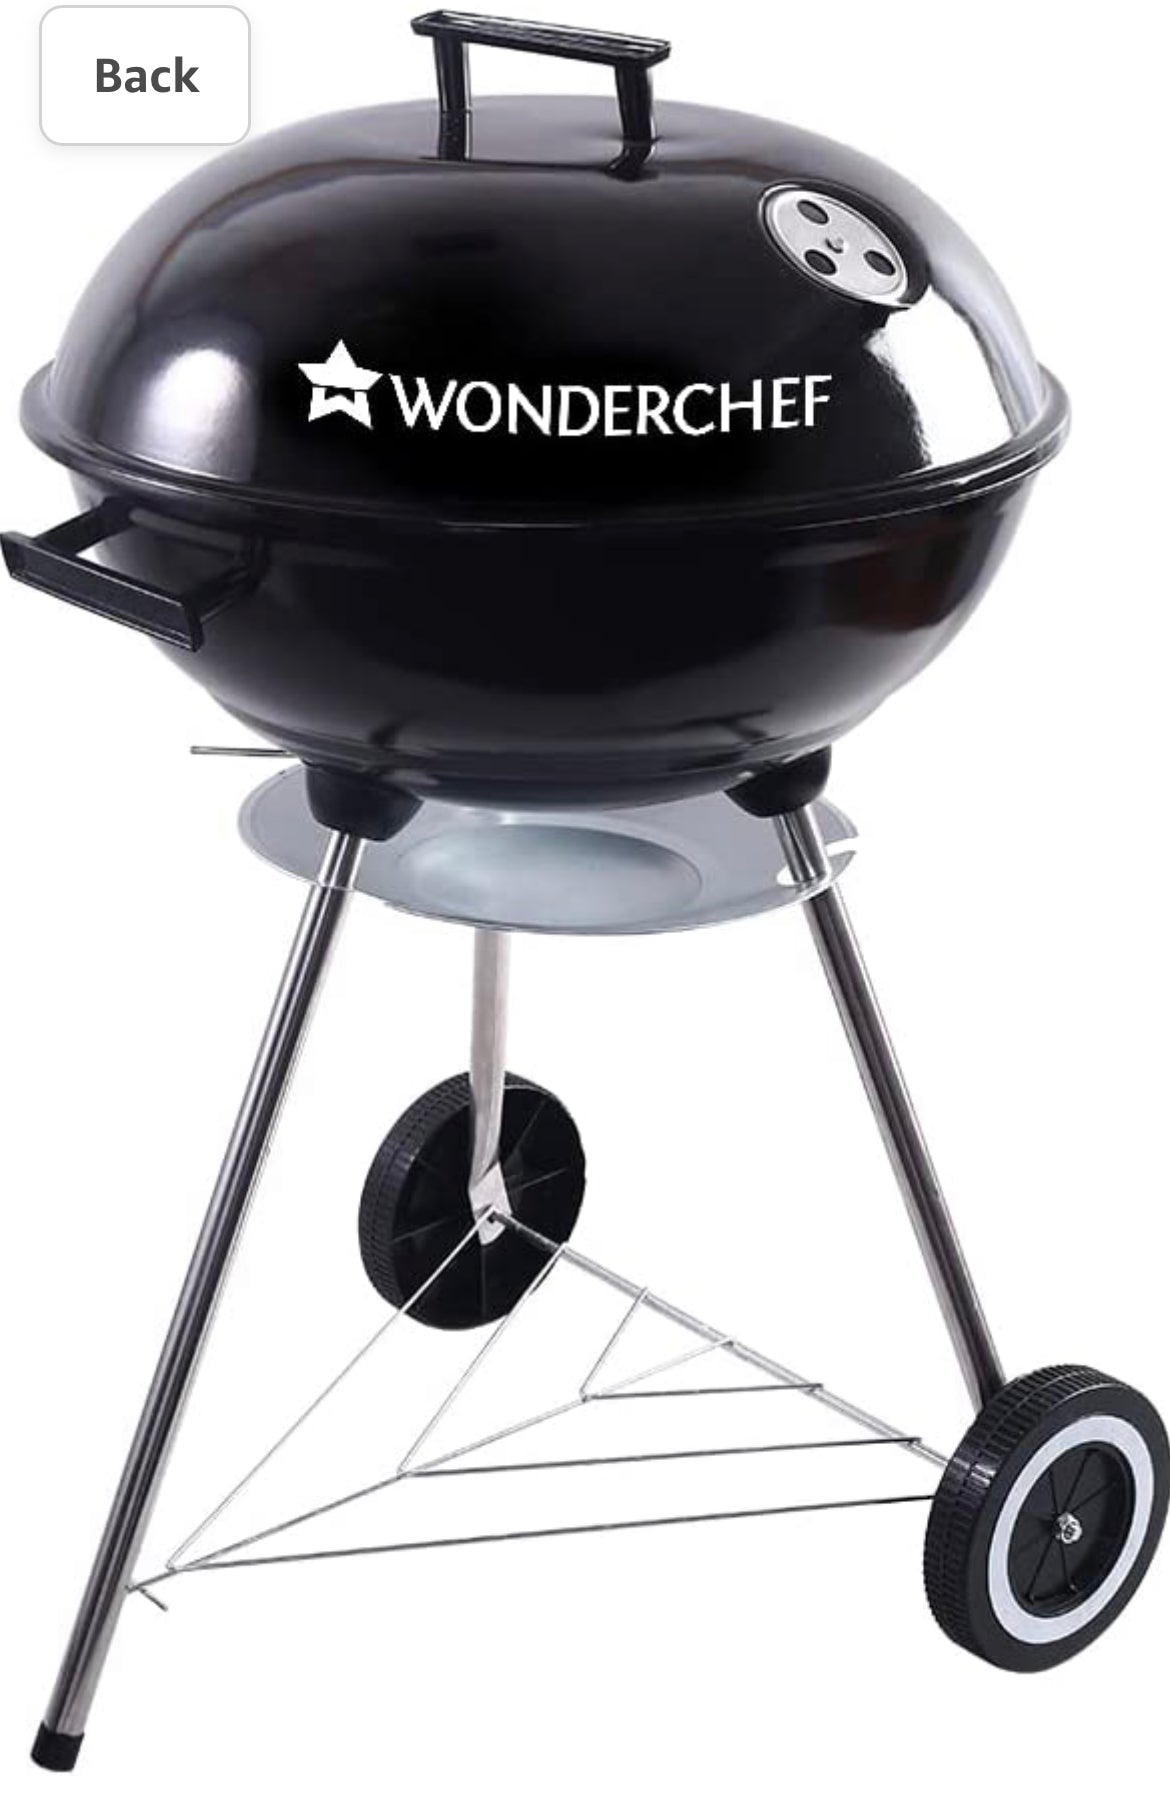 Wonderchef Charcoal BBQ, 1 year warranty